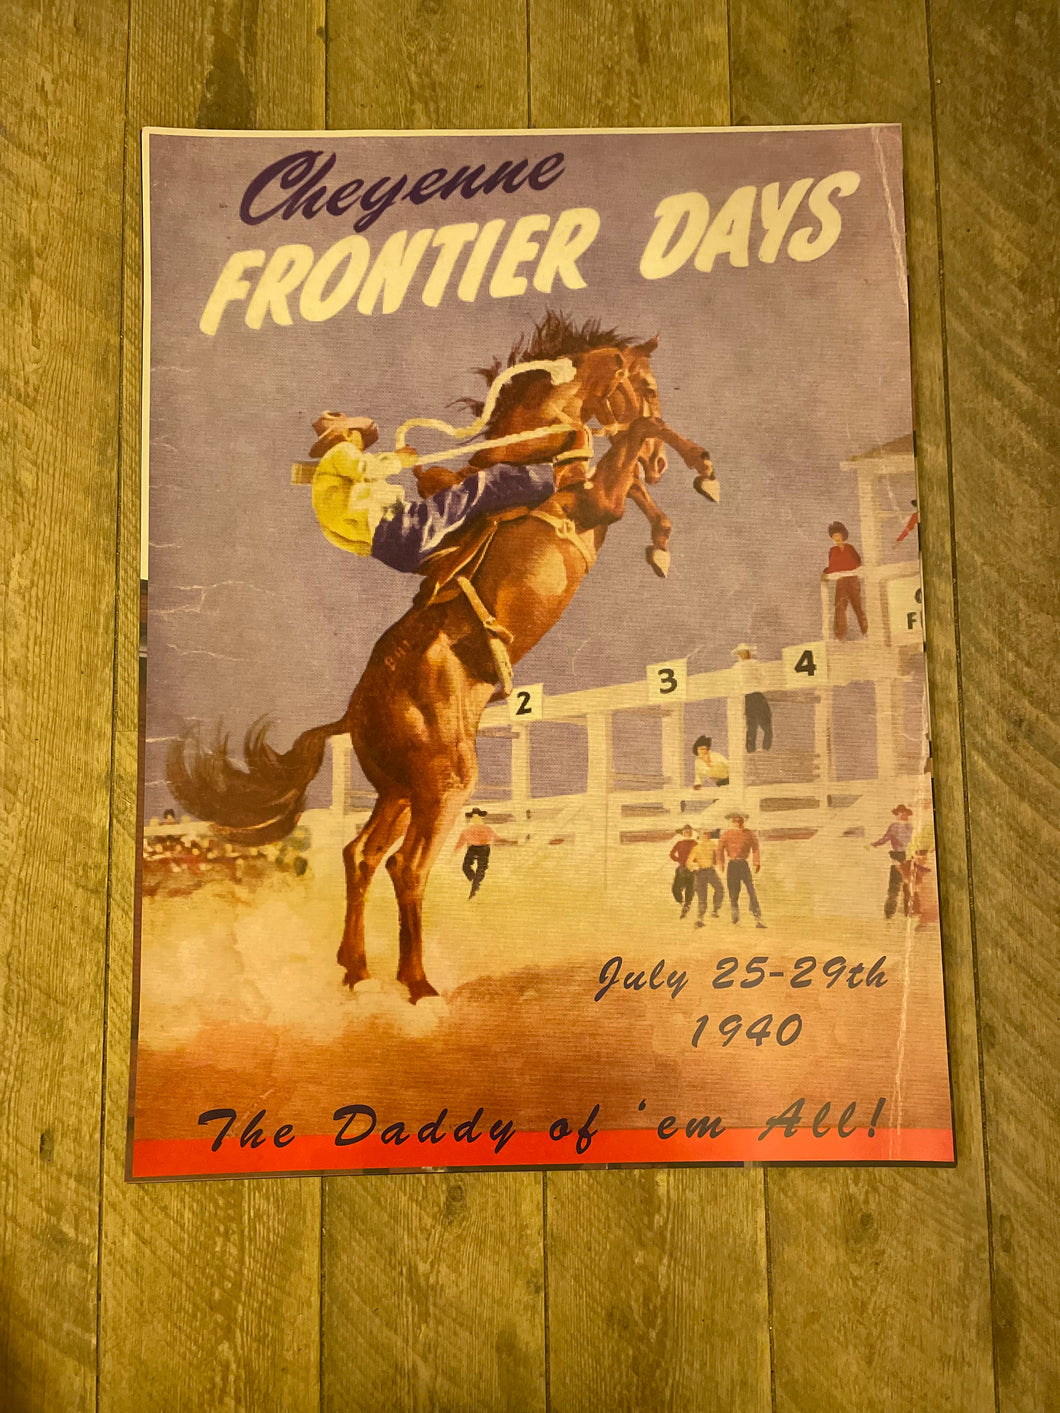 Cheyenne Frontier Days 1940